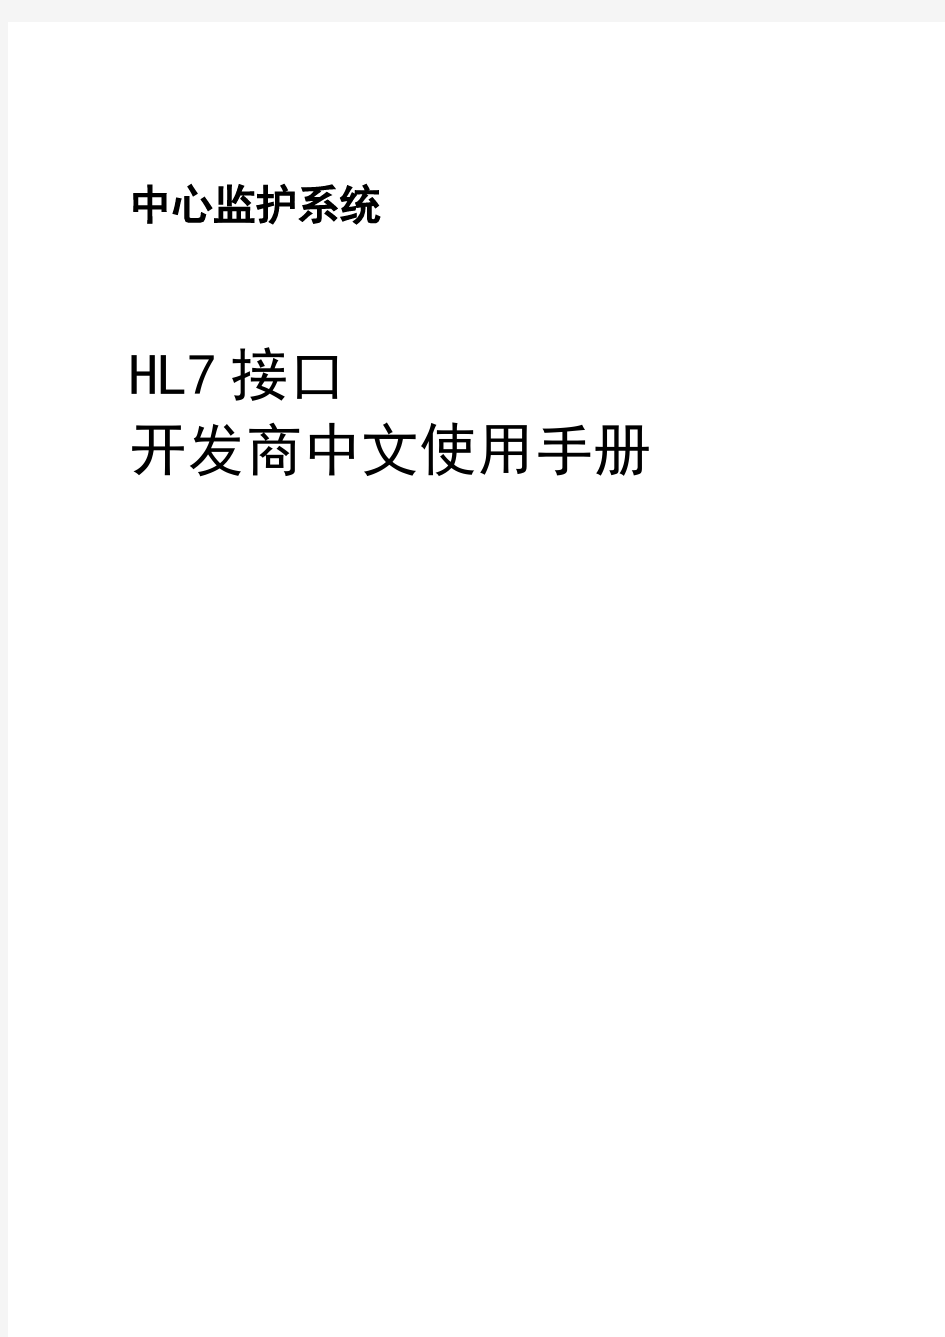 hl7接口开发商中文使用手册